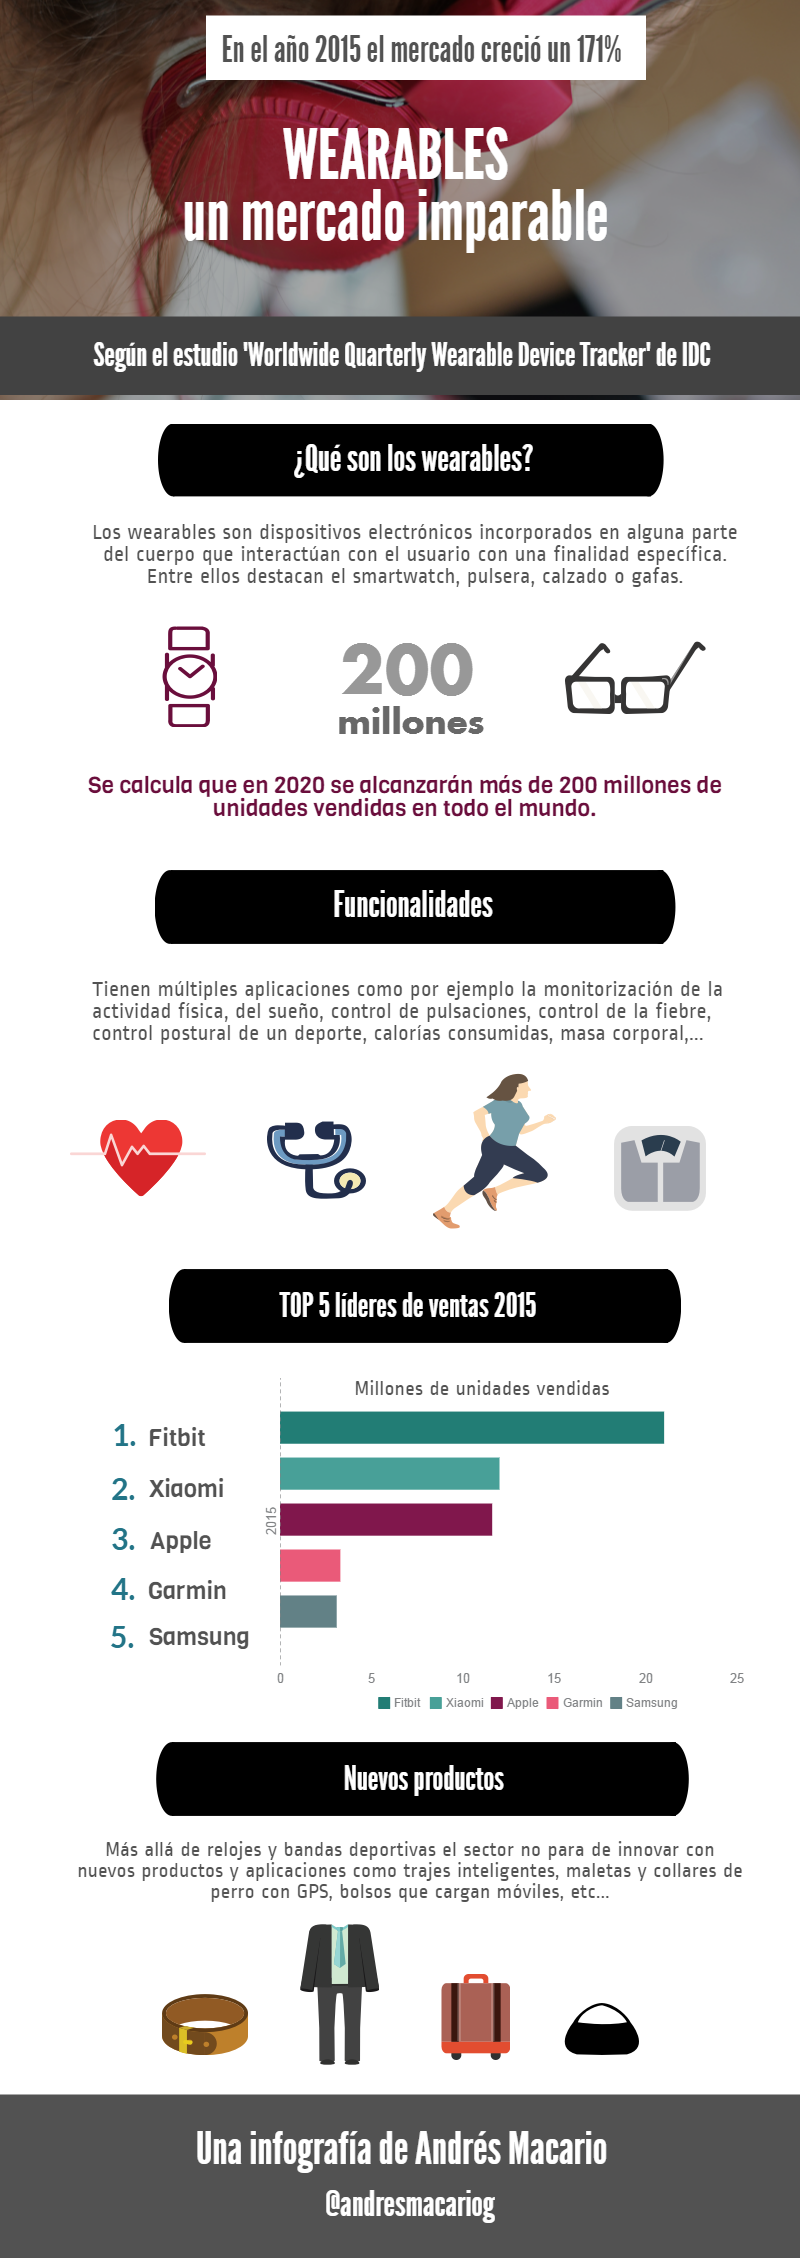 Wearables un mercado imparable- Infografia Andres Macario